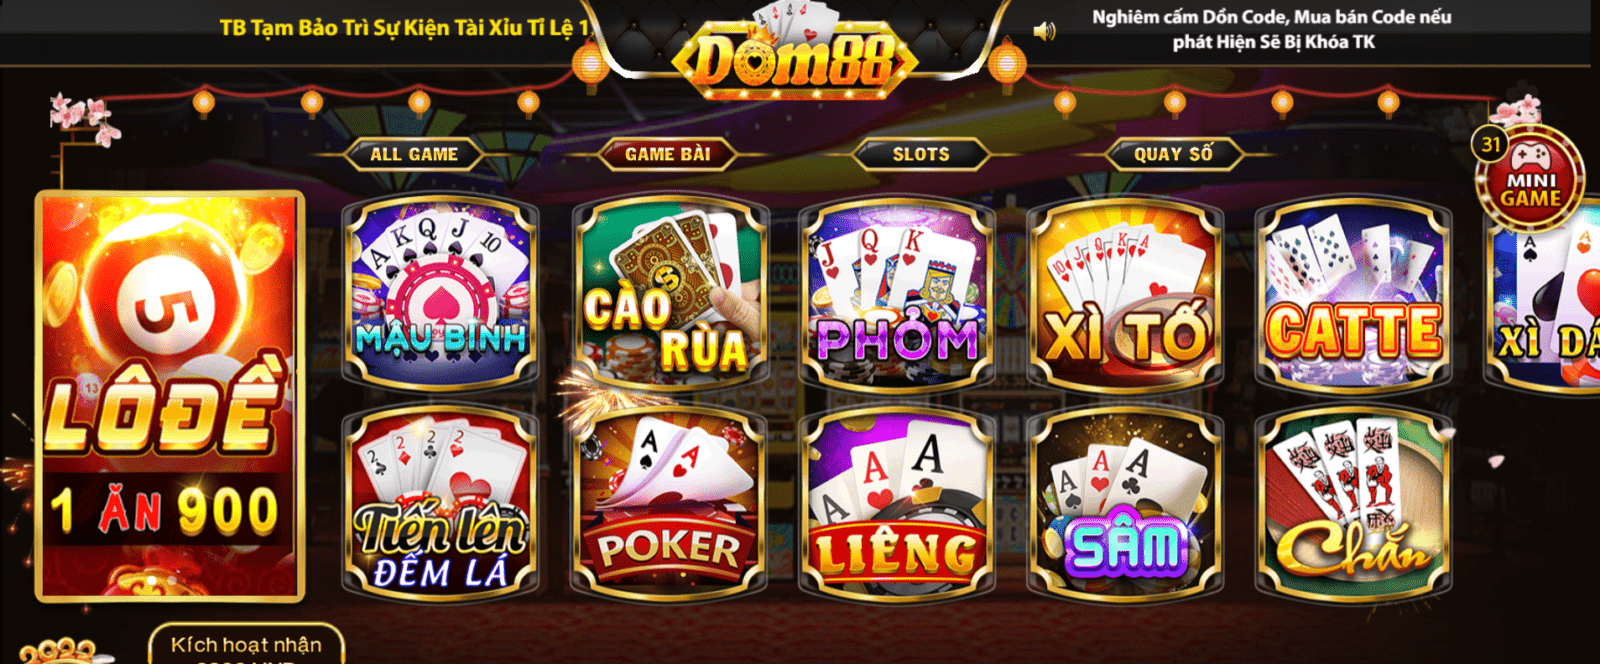 Dom88.club - Thiên đường cờ bạc 